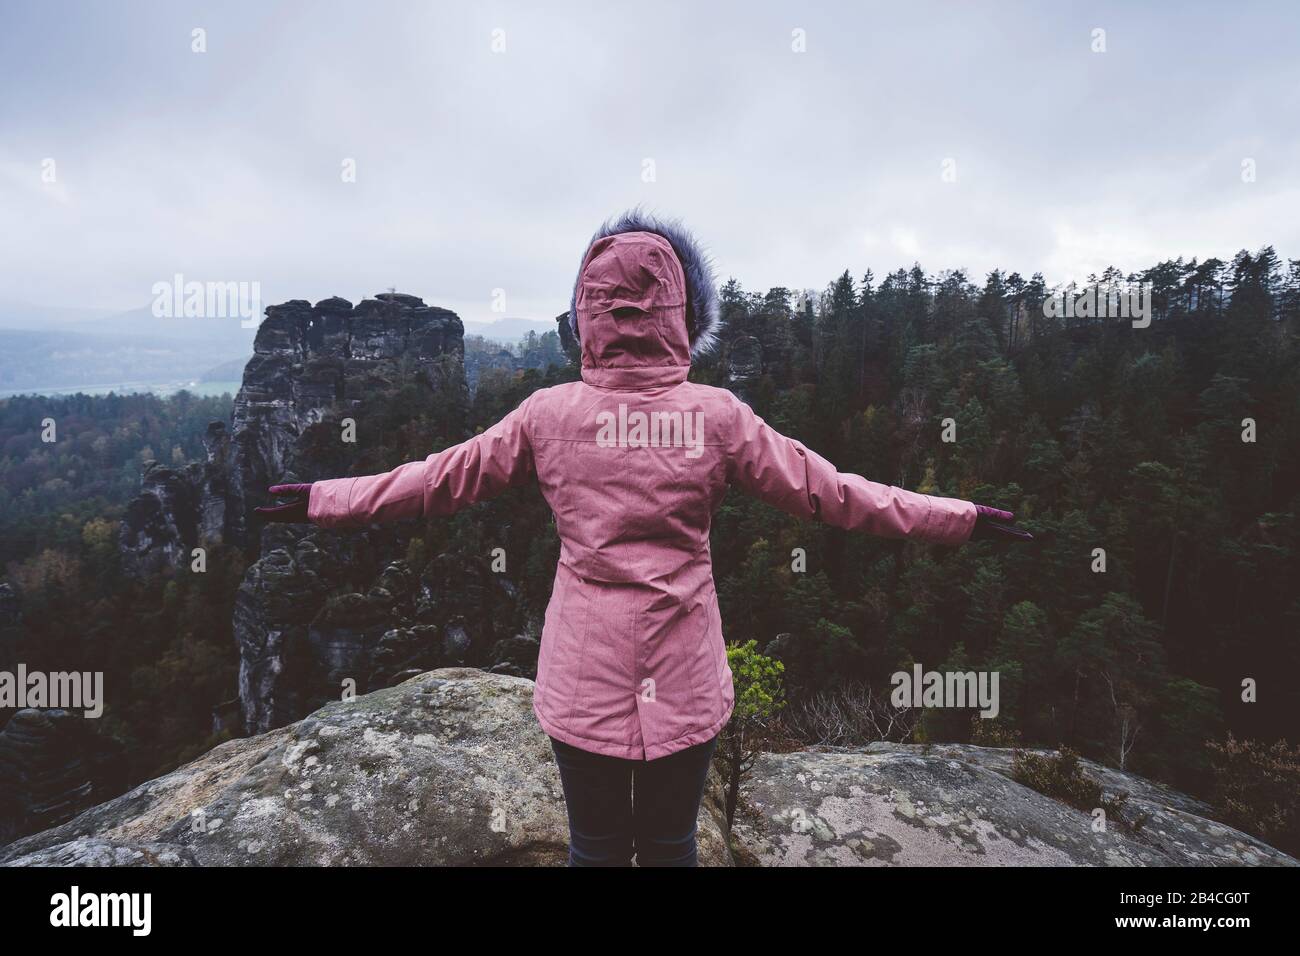 Junge Frau in willicher Kleidung im Freuen, die allein auf einem Berg steht und die Aussicht genießt, Reiselebenstil-Harmoniekonzept, Rückansicht Banque D'Images